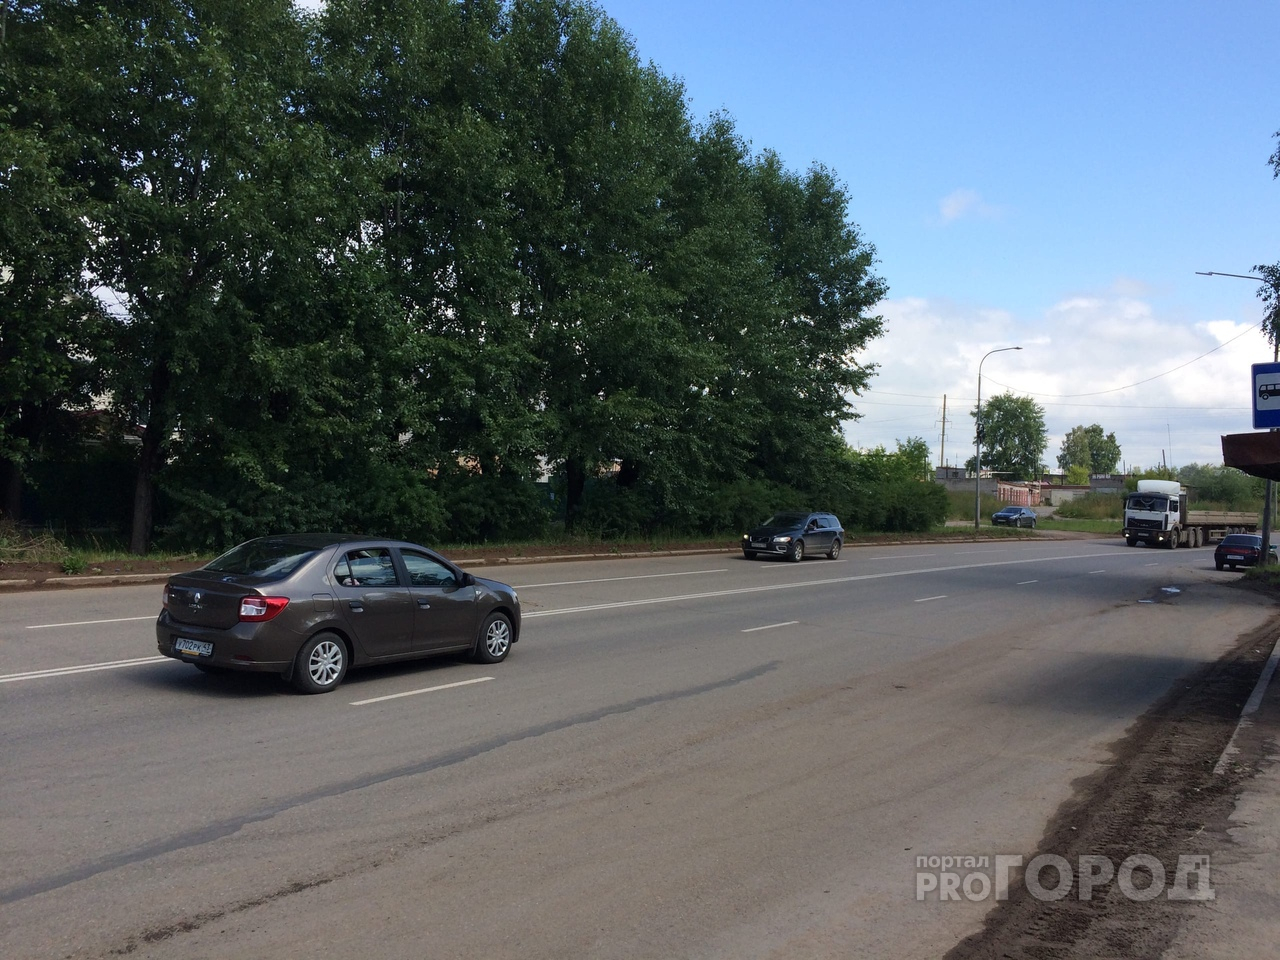 Новую разметку на дорогах Кирово-Чепецка обещали скорректировать